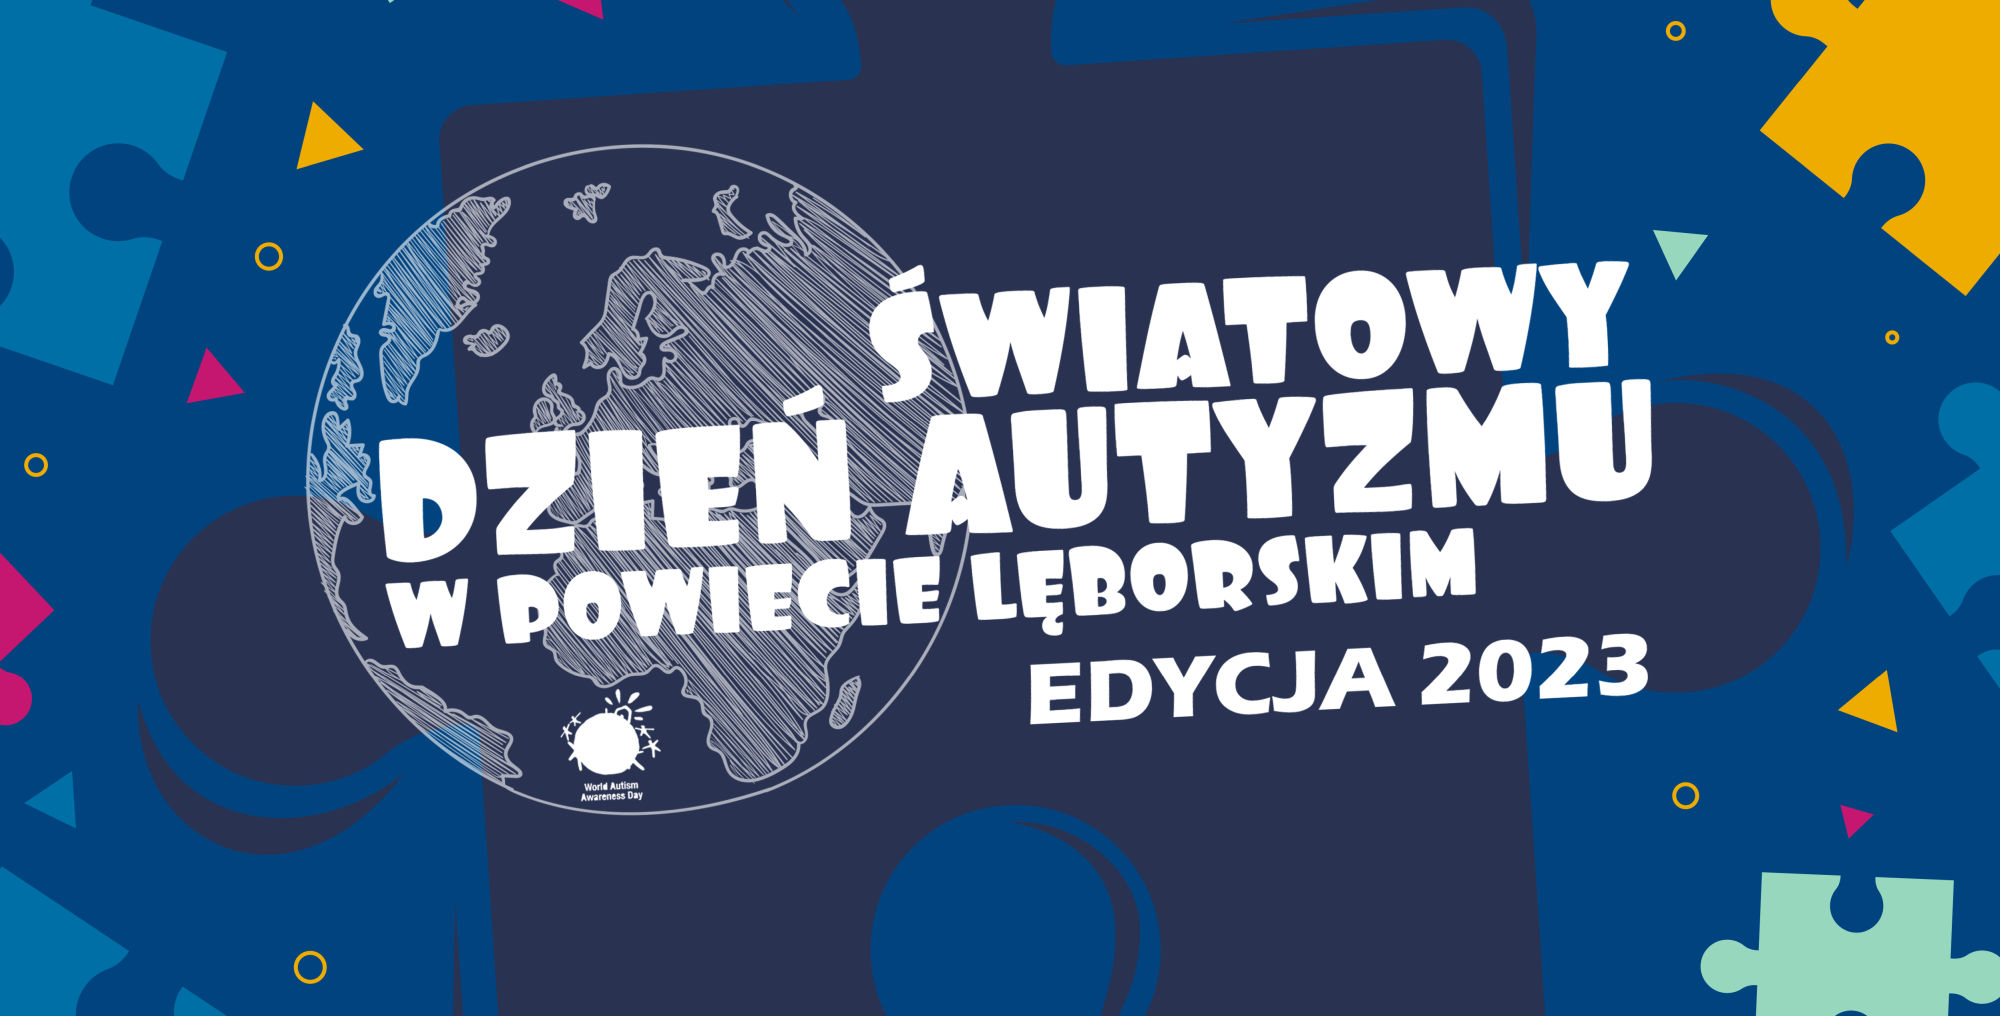 Światowy Dzień Autyzmu w Powiecie Lęborskim 2023 – PROGRAM